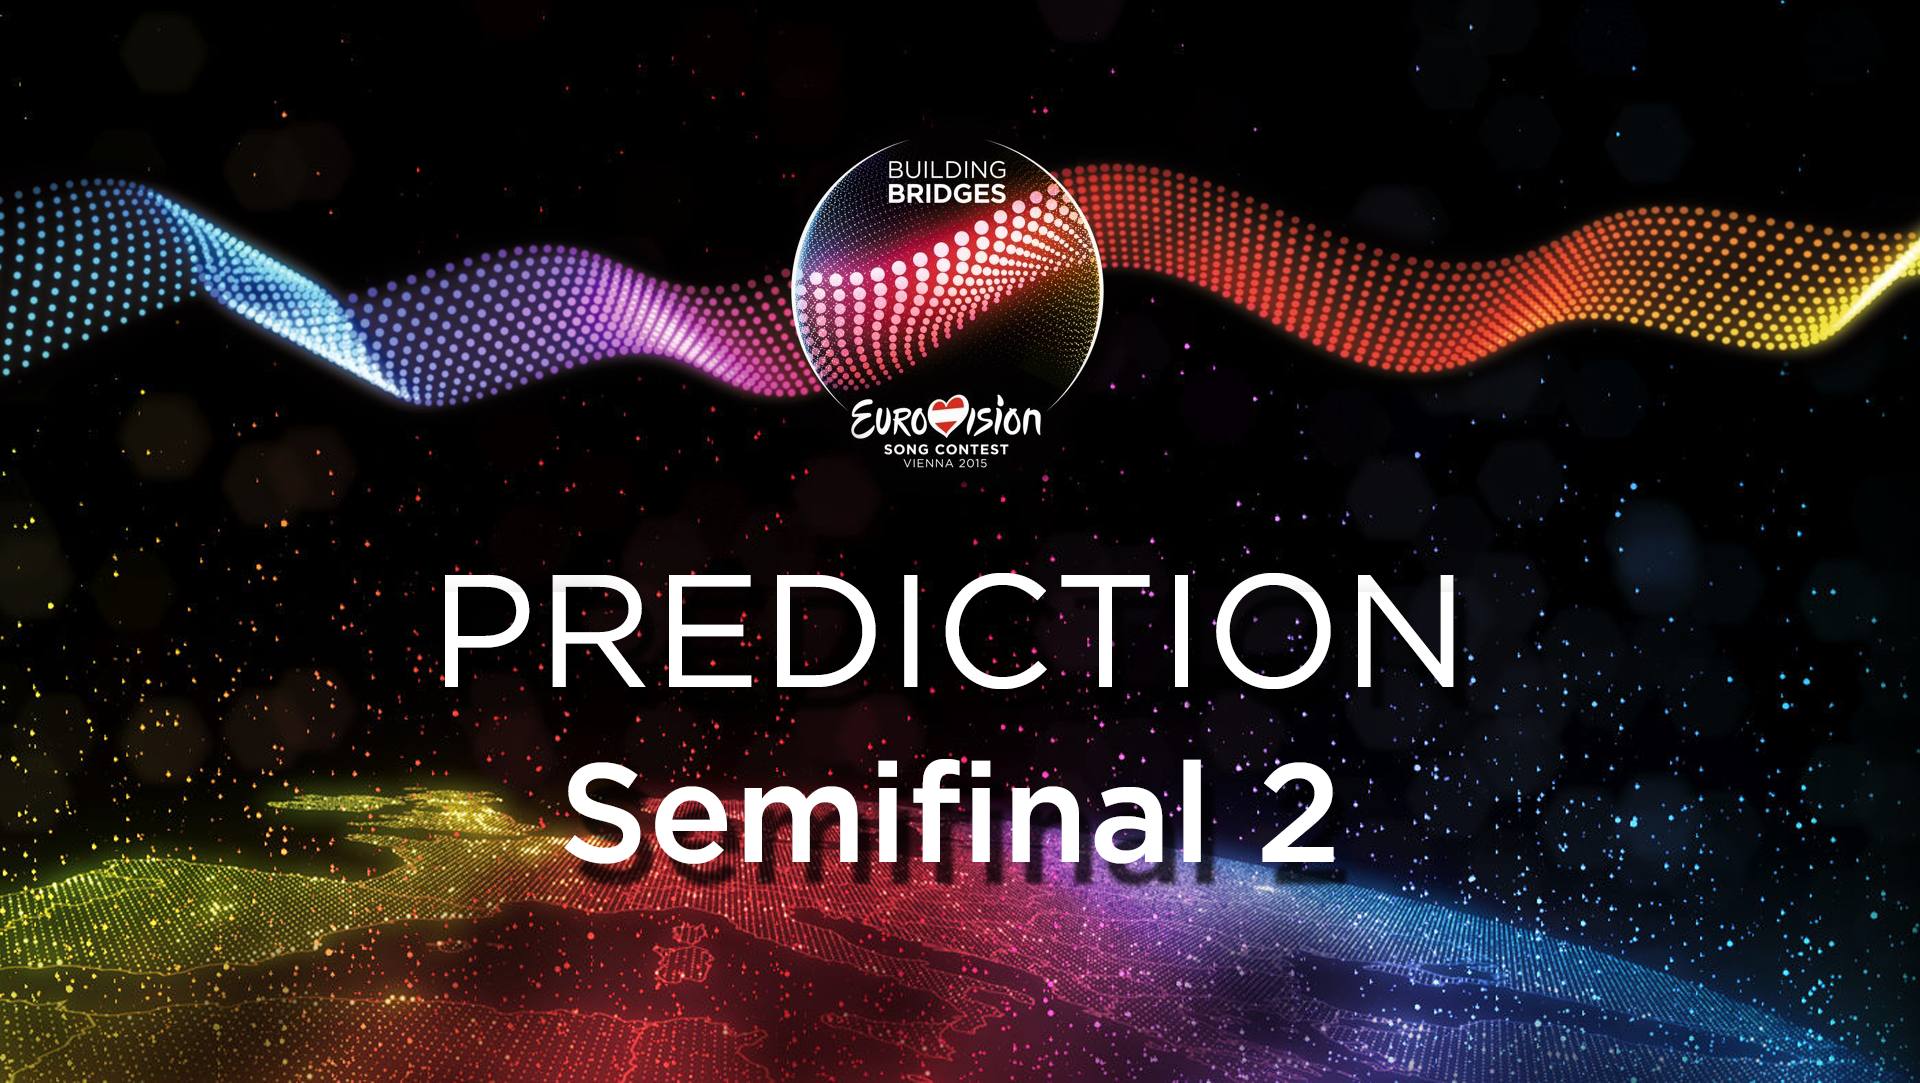 Eurovision 2015: The Semi-Final 2 Prediction